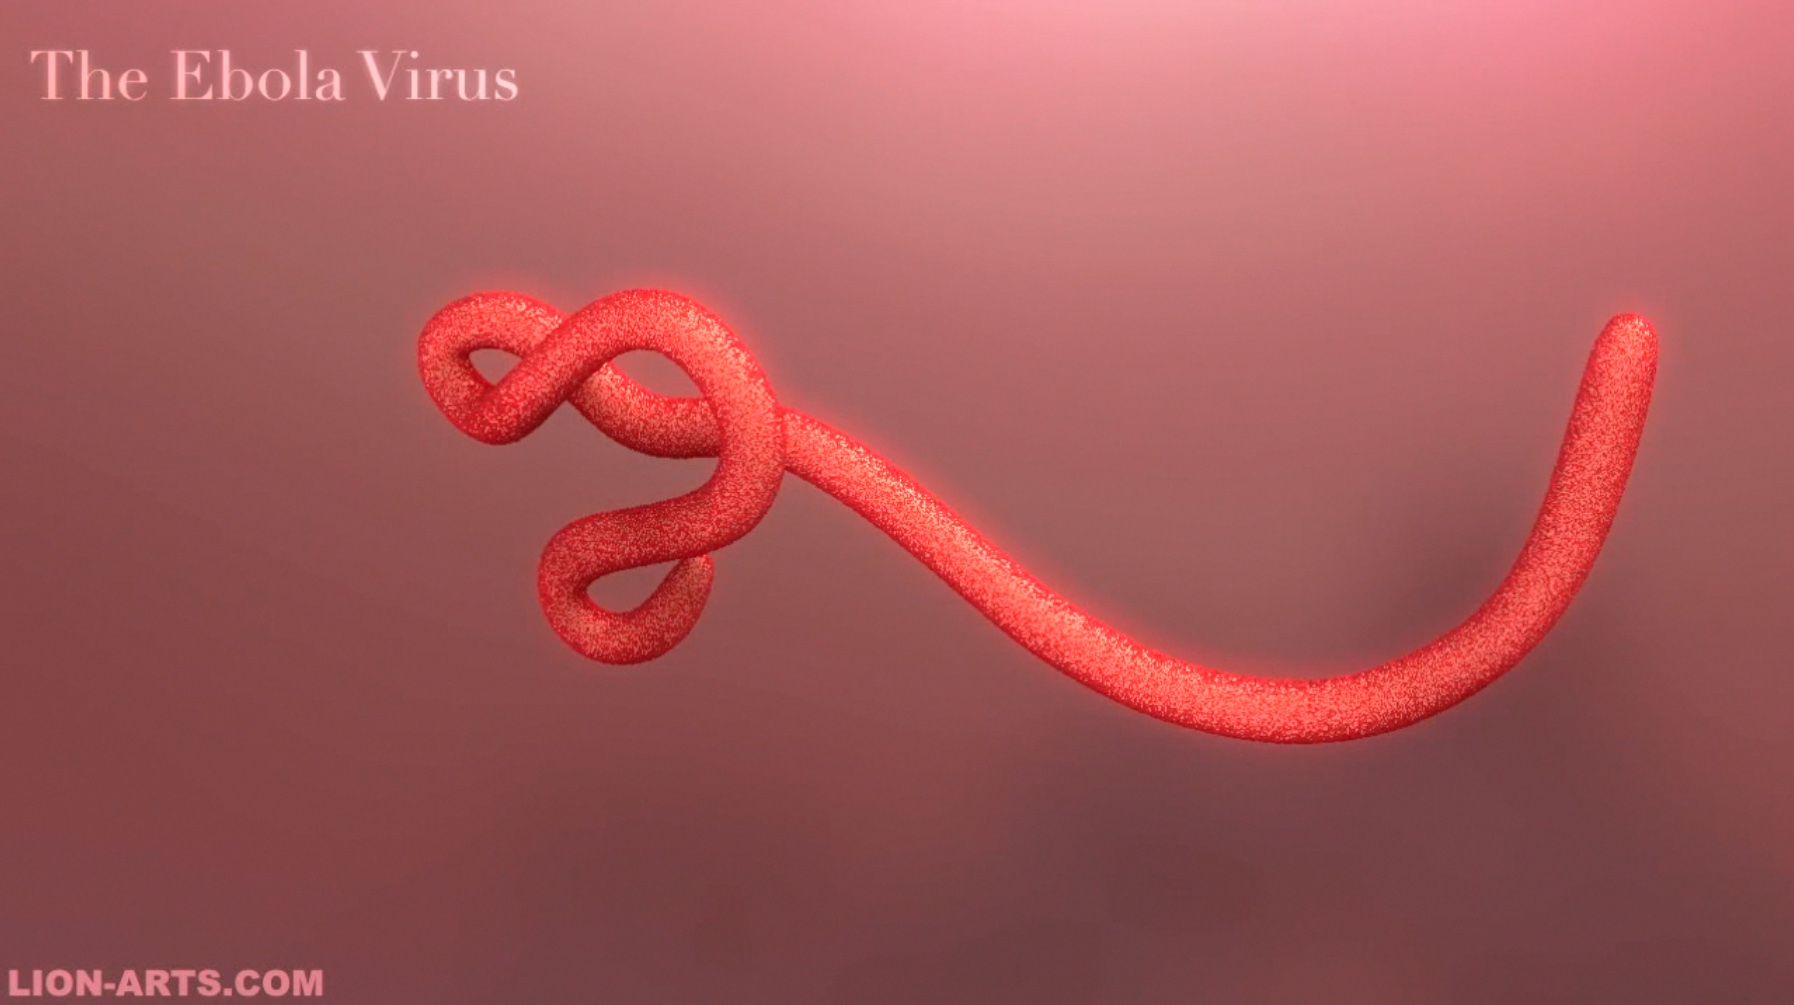 Ebola1_Intro_Lion-Arts_Daniel_E_De_Leon1.jpg